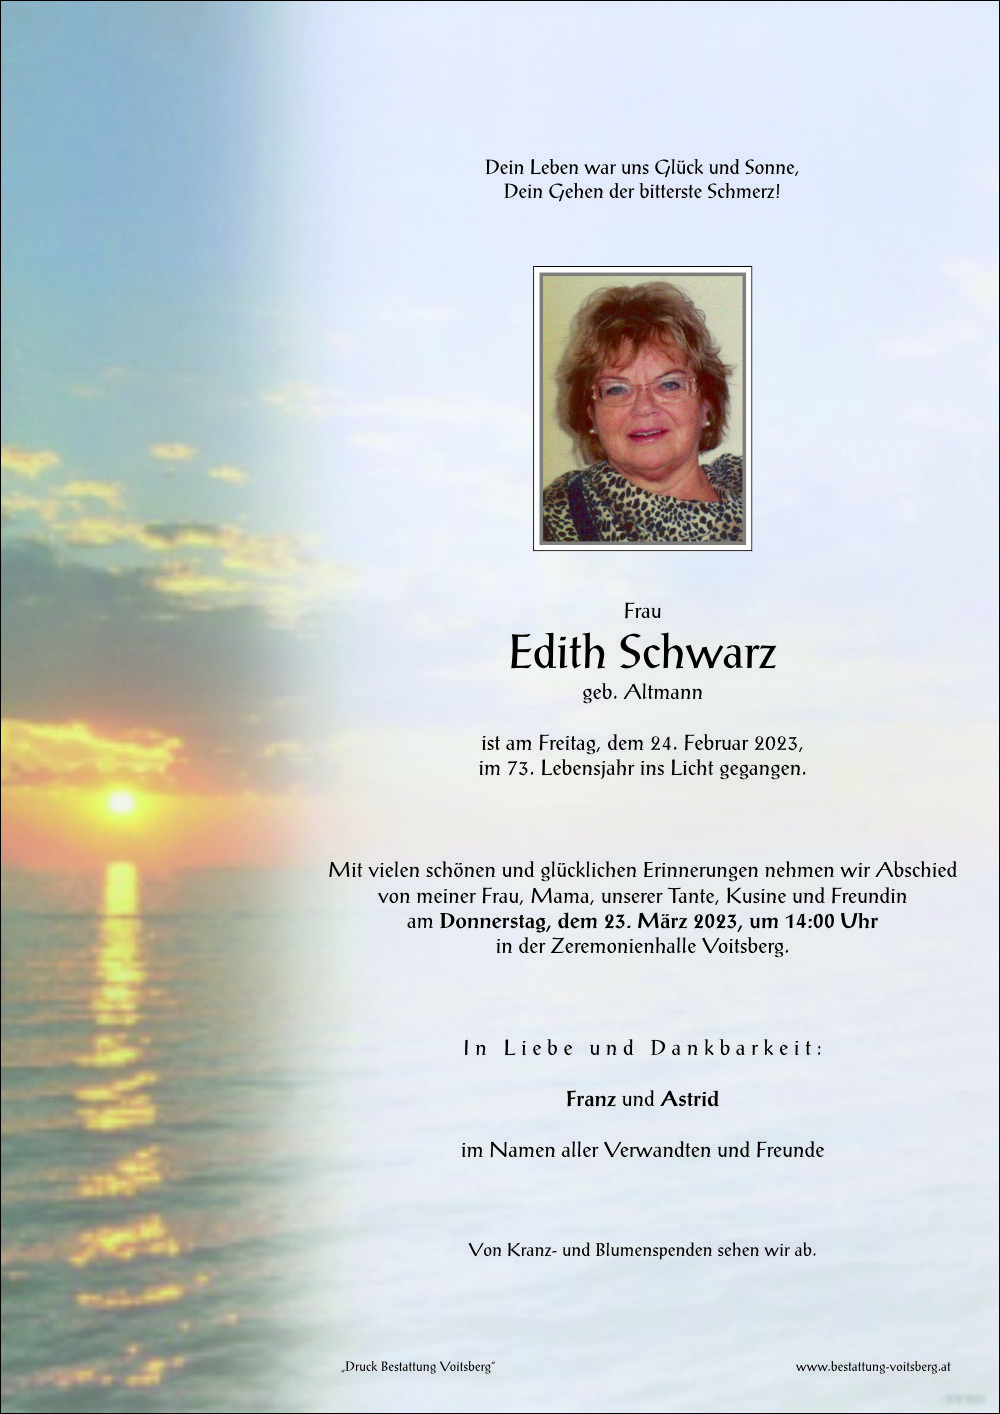 Edith Schwarz